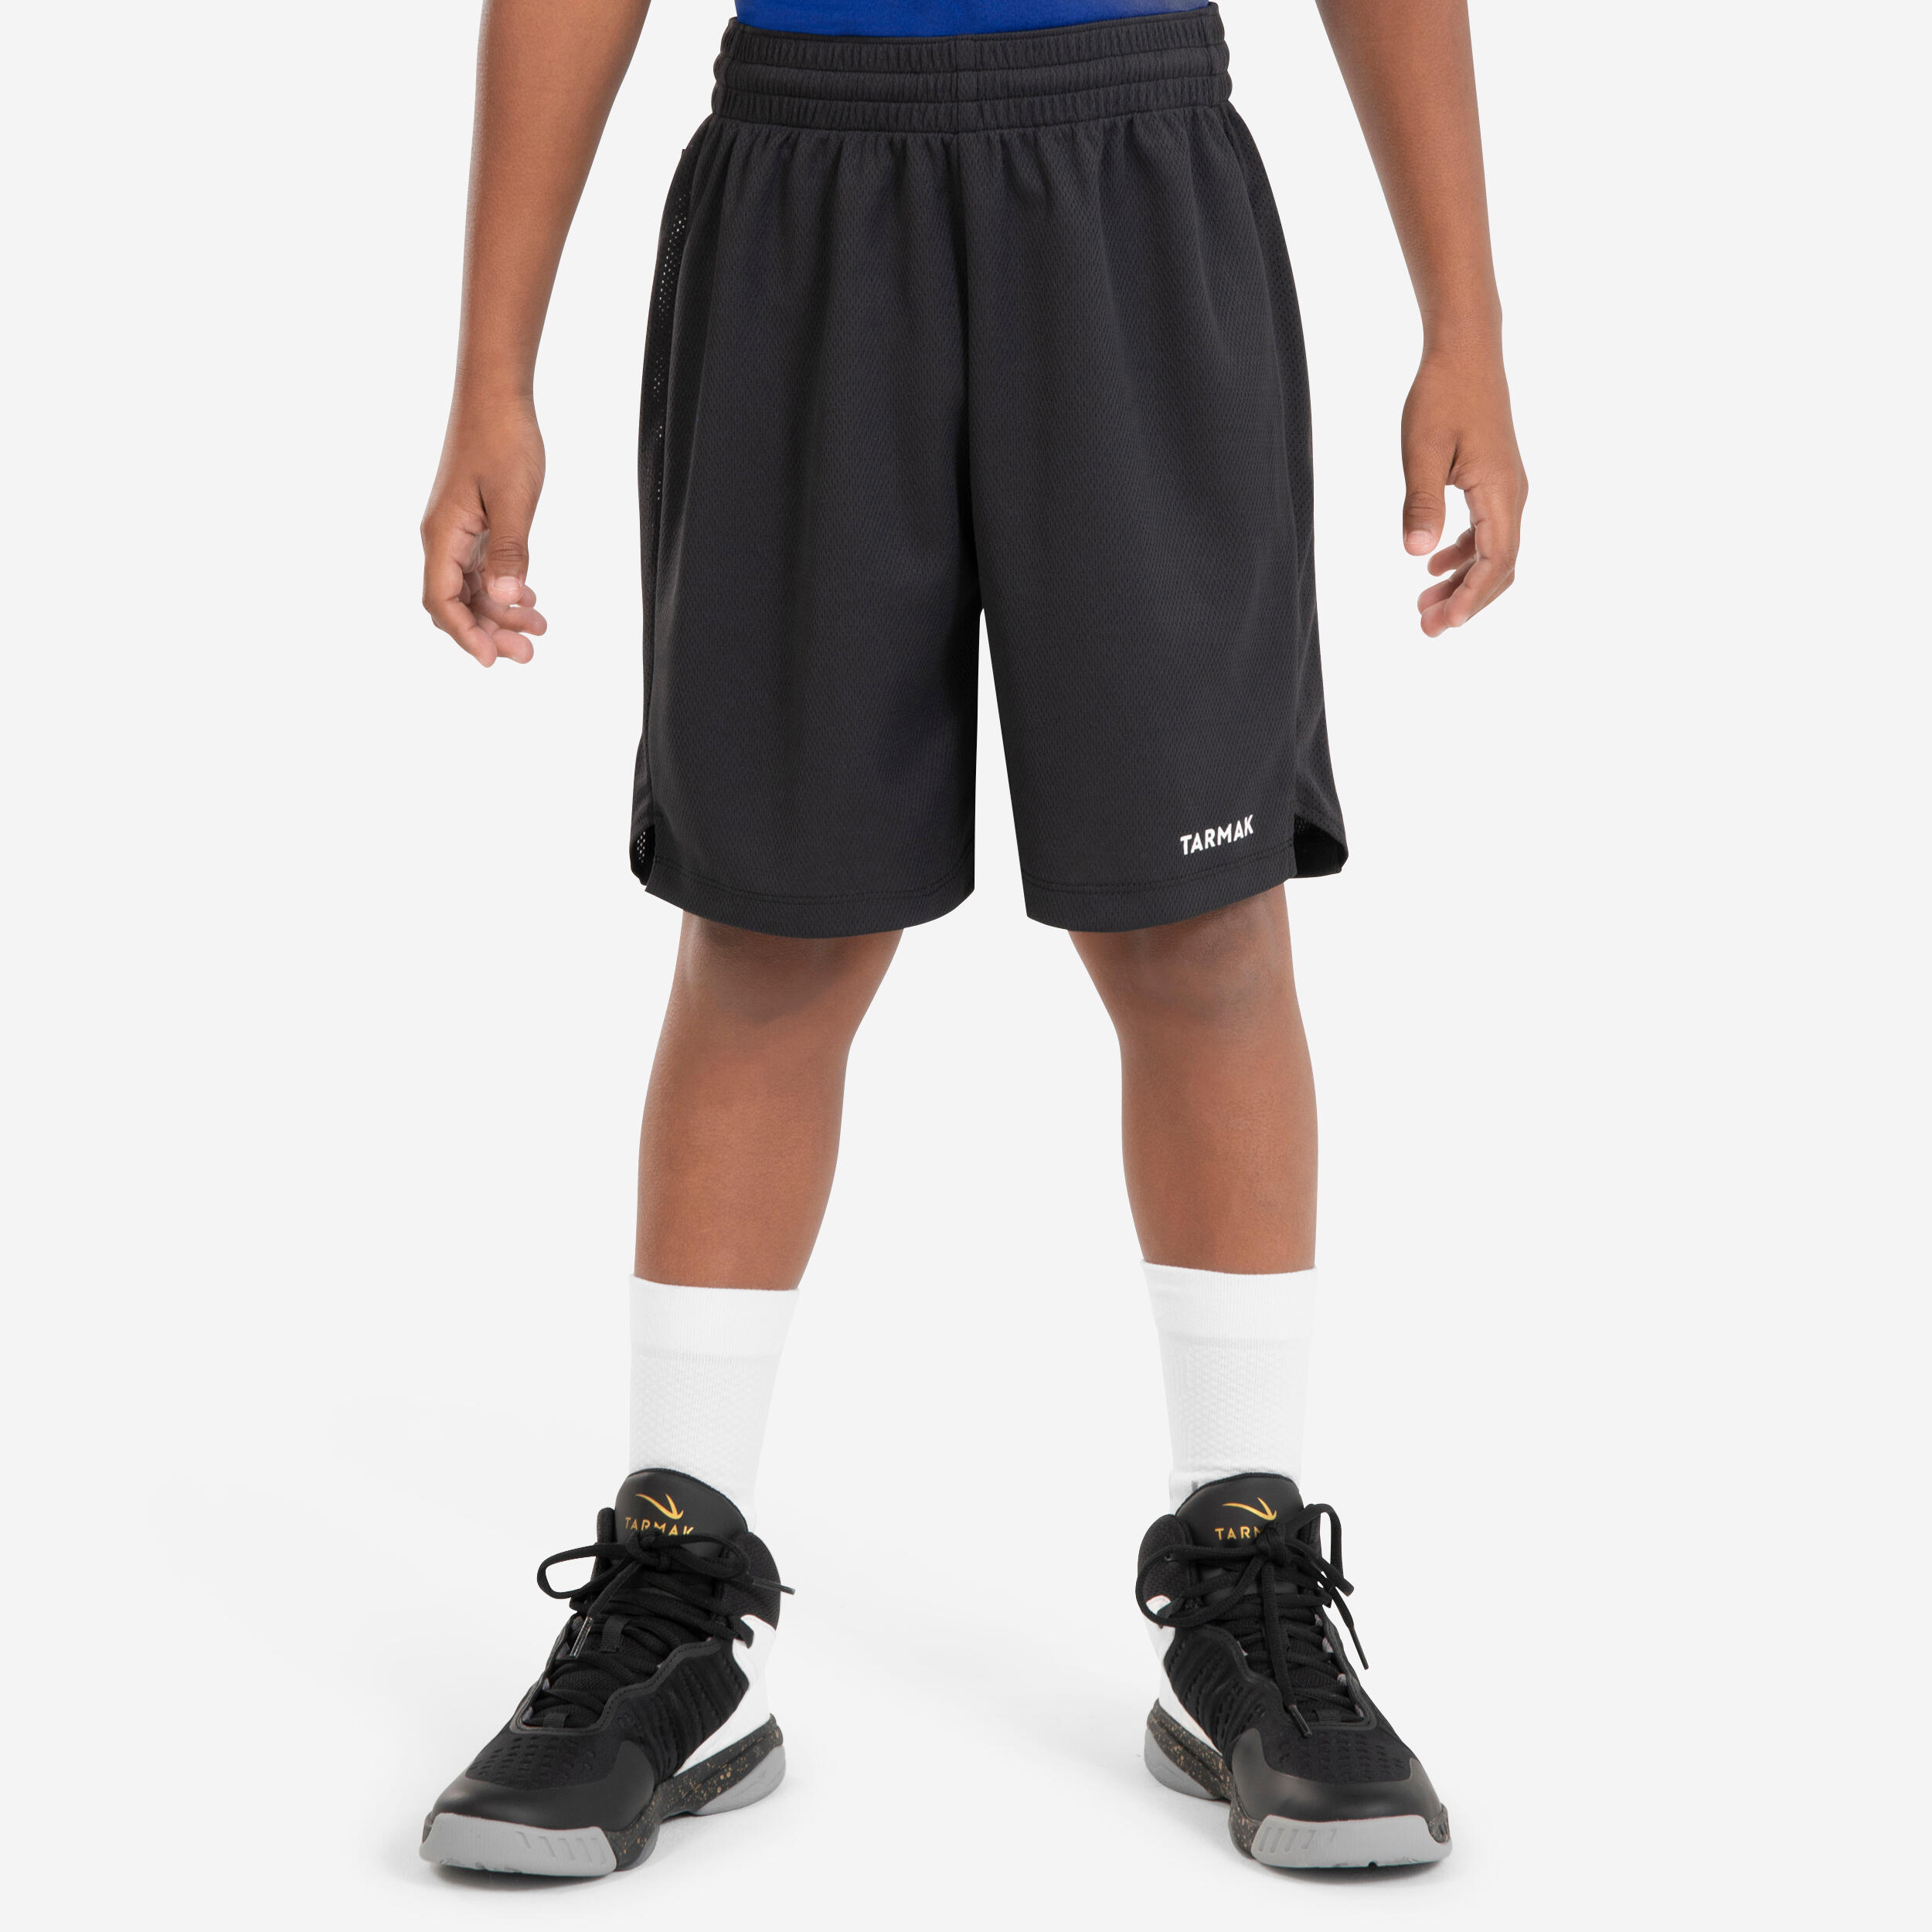 Kids' Basketball Shorts - SH 500 Black